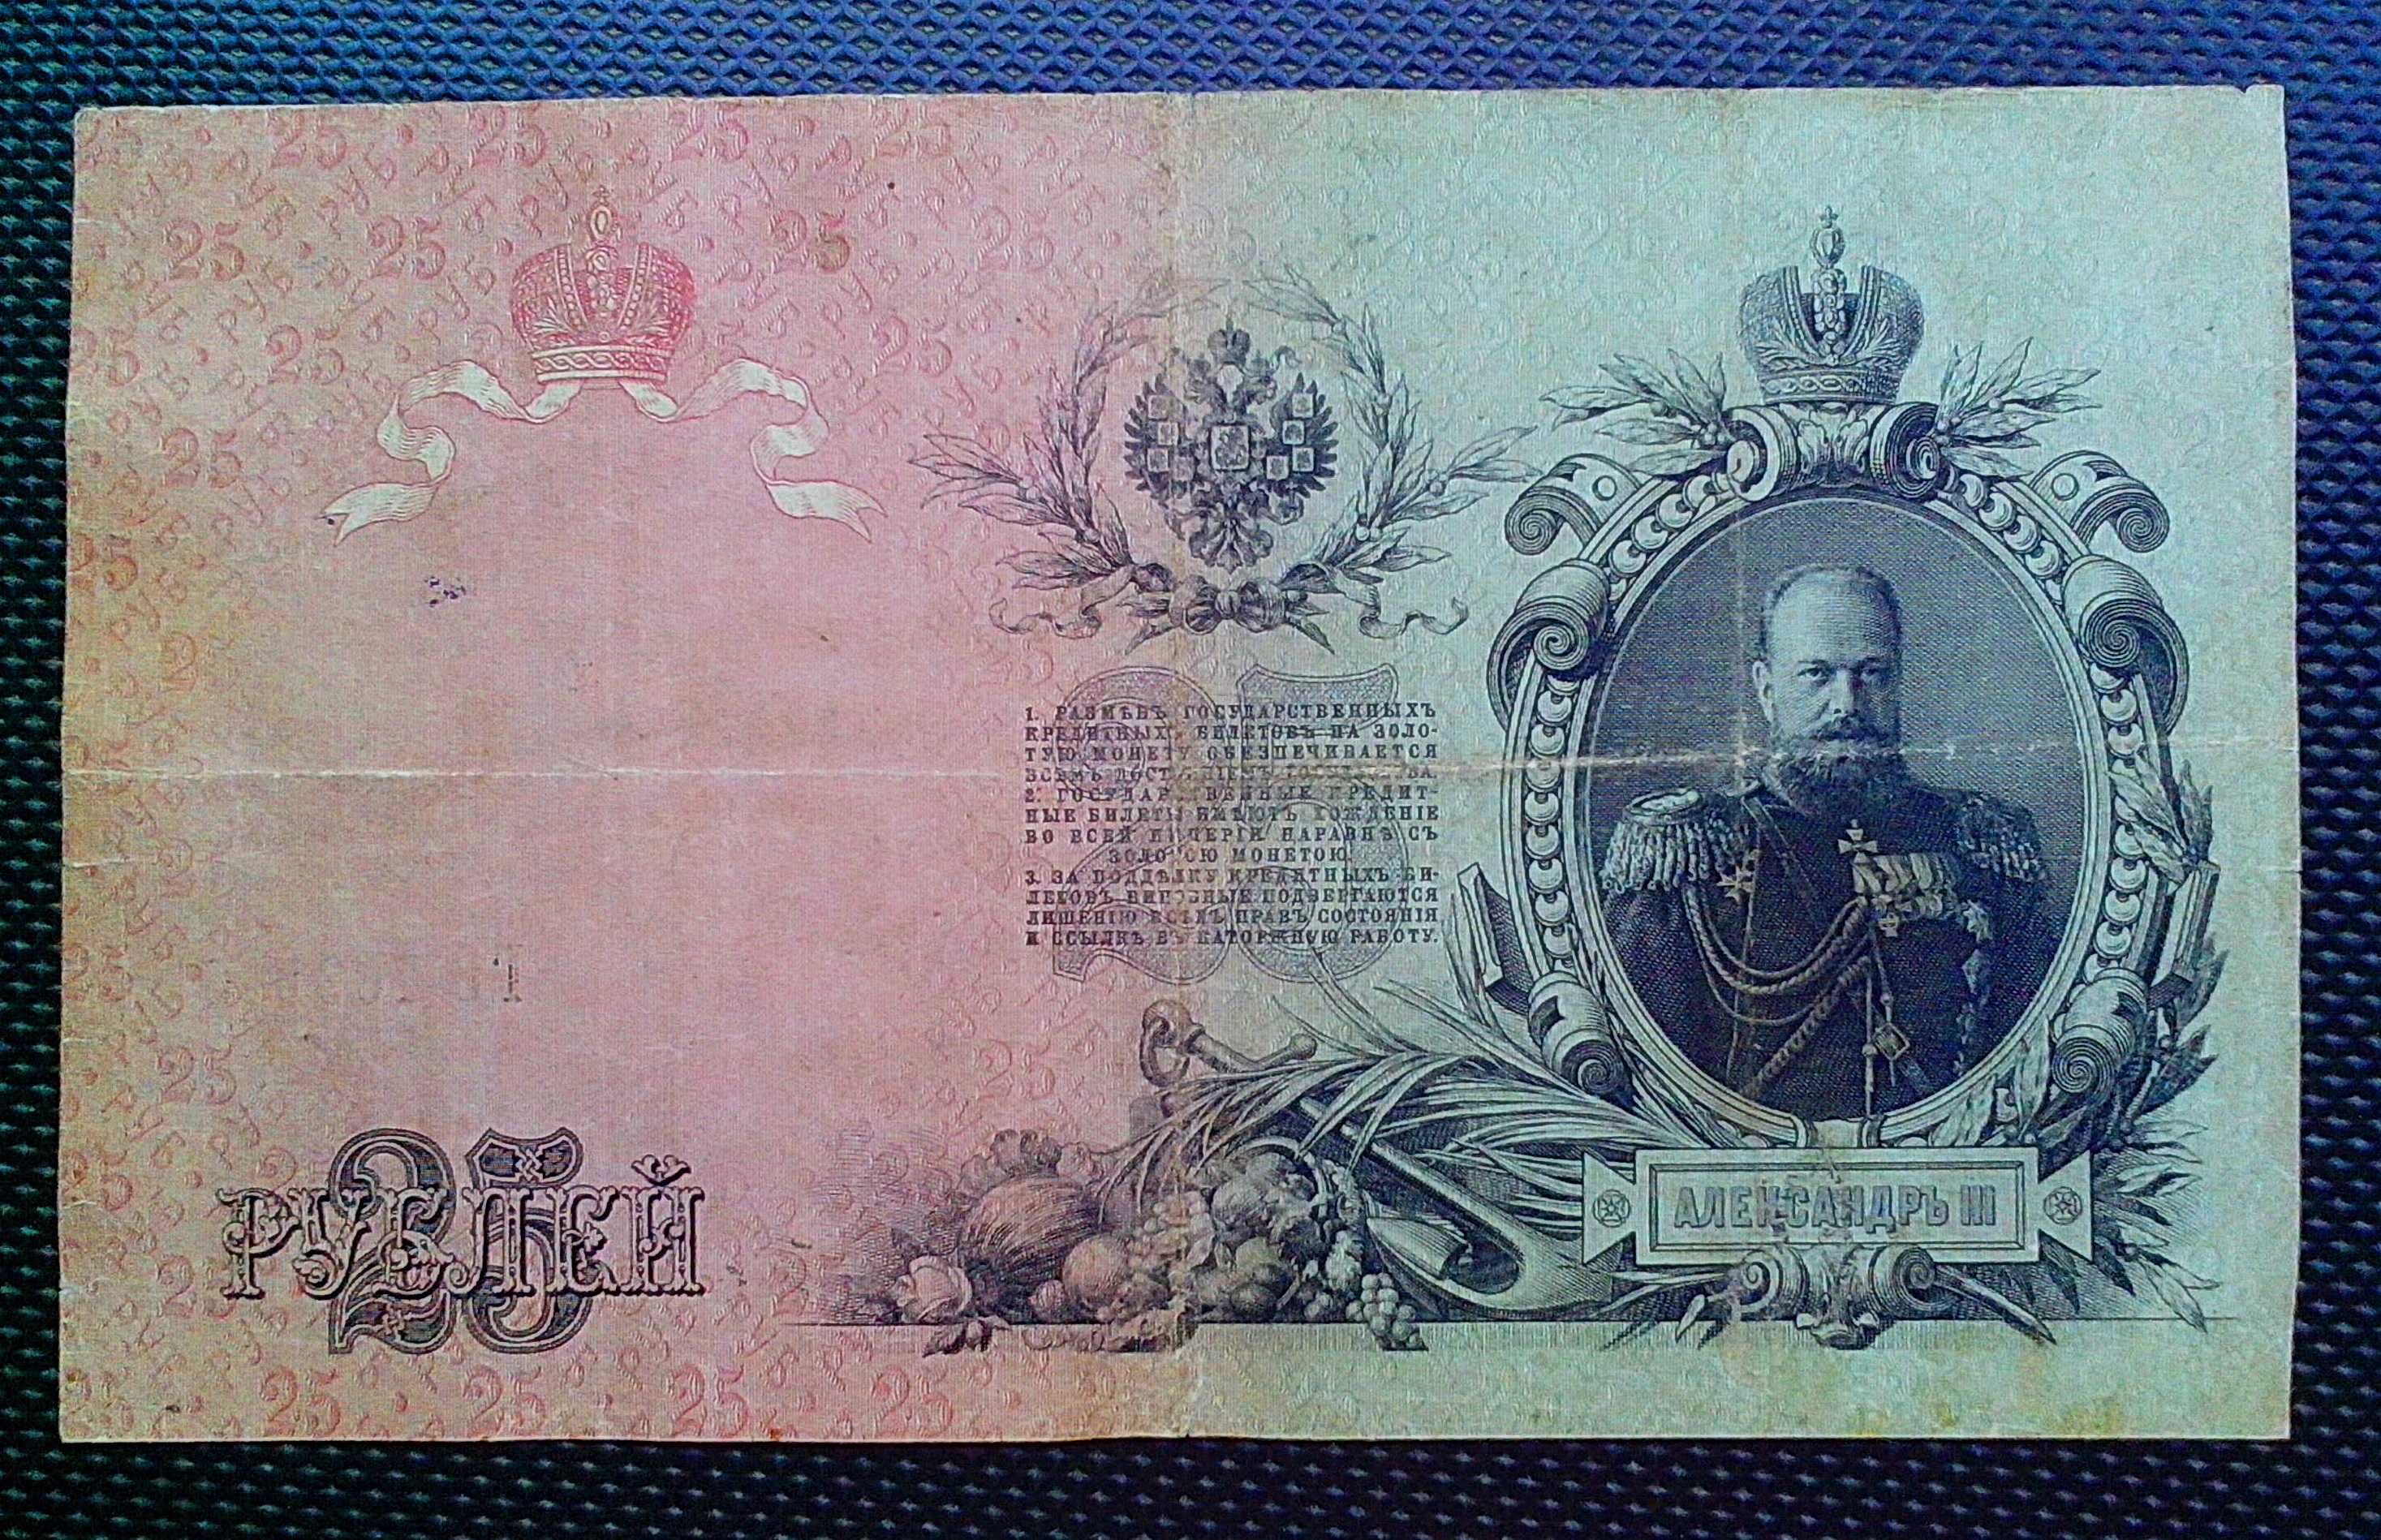 Государственный кредитный билет 25 рублей образца 1909 г.